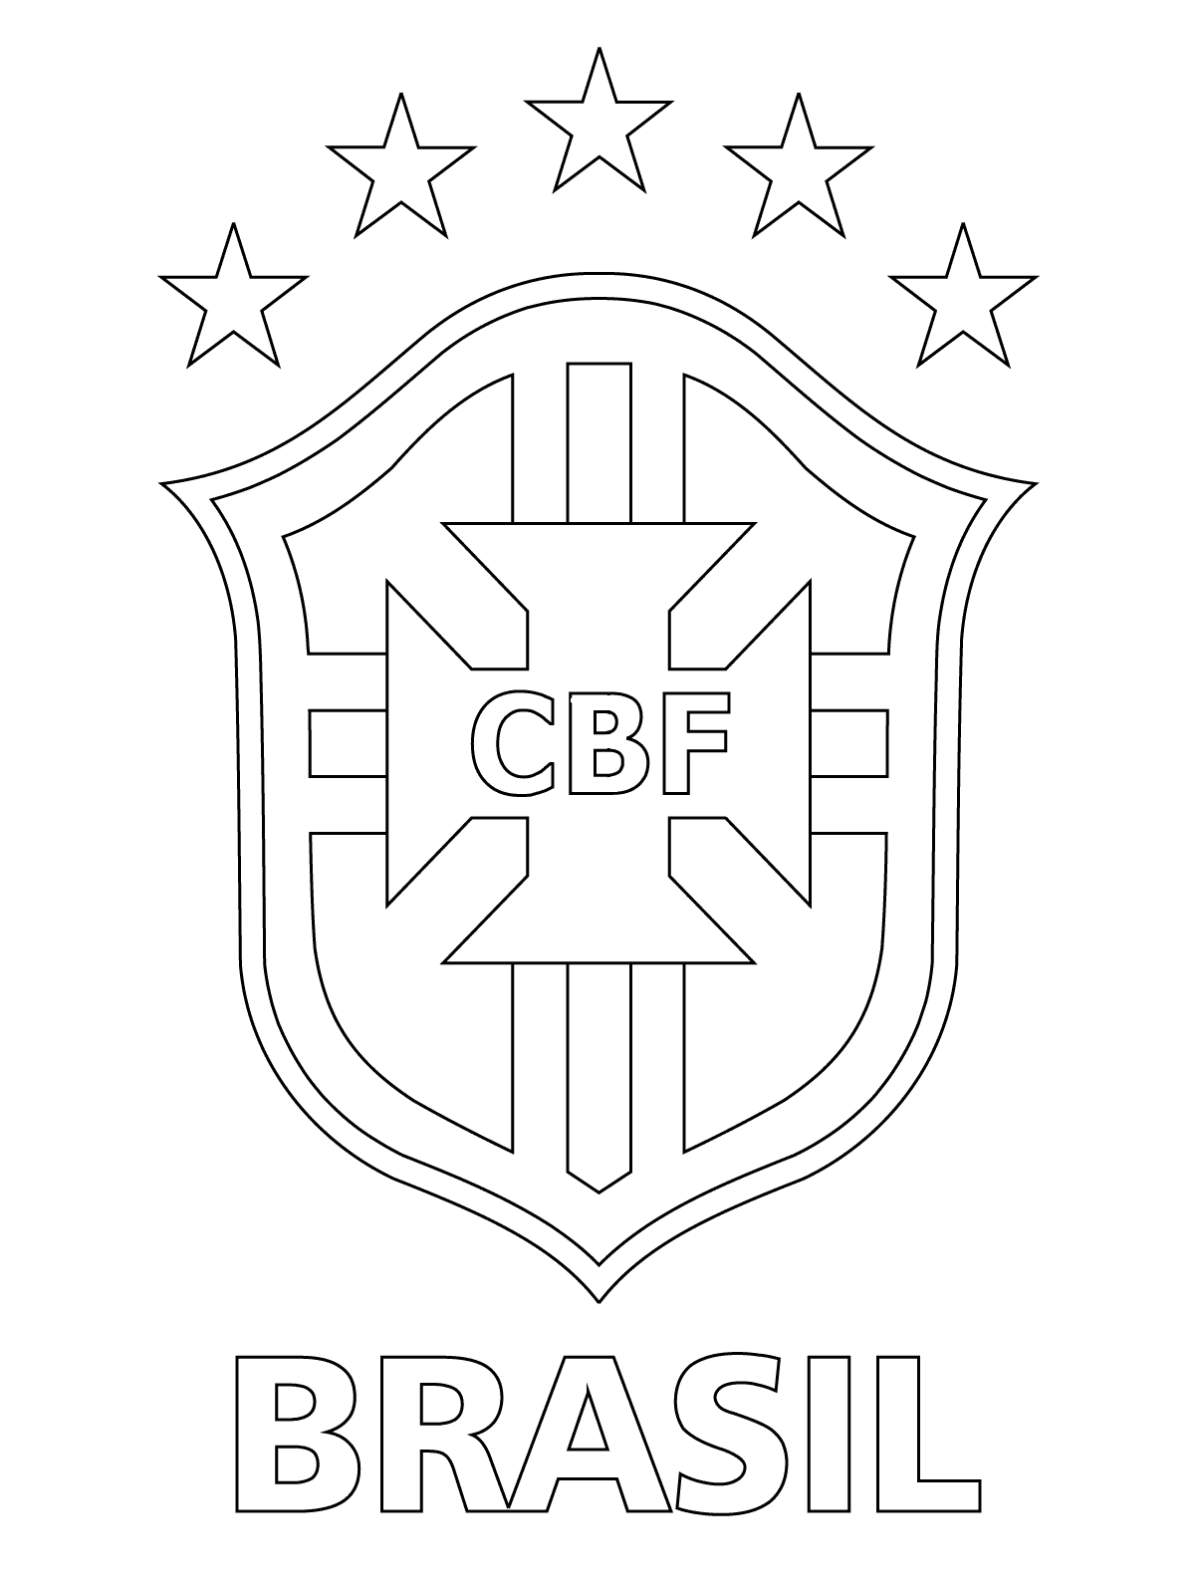 Клуб раскраска распечатать. Сборная Бразилии по футболу эмблема раскраска. Раскраска футбольные эмблемы. Футбольная команда рисунок. Раскраска футбольная команда.